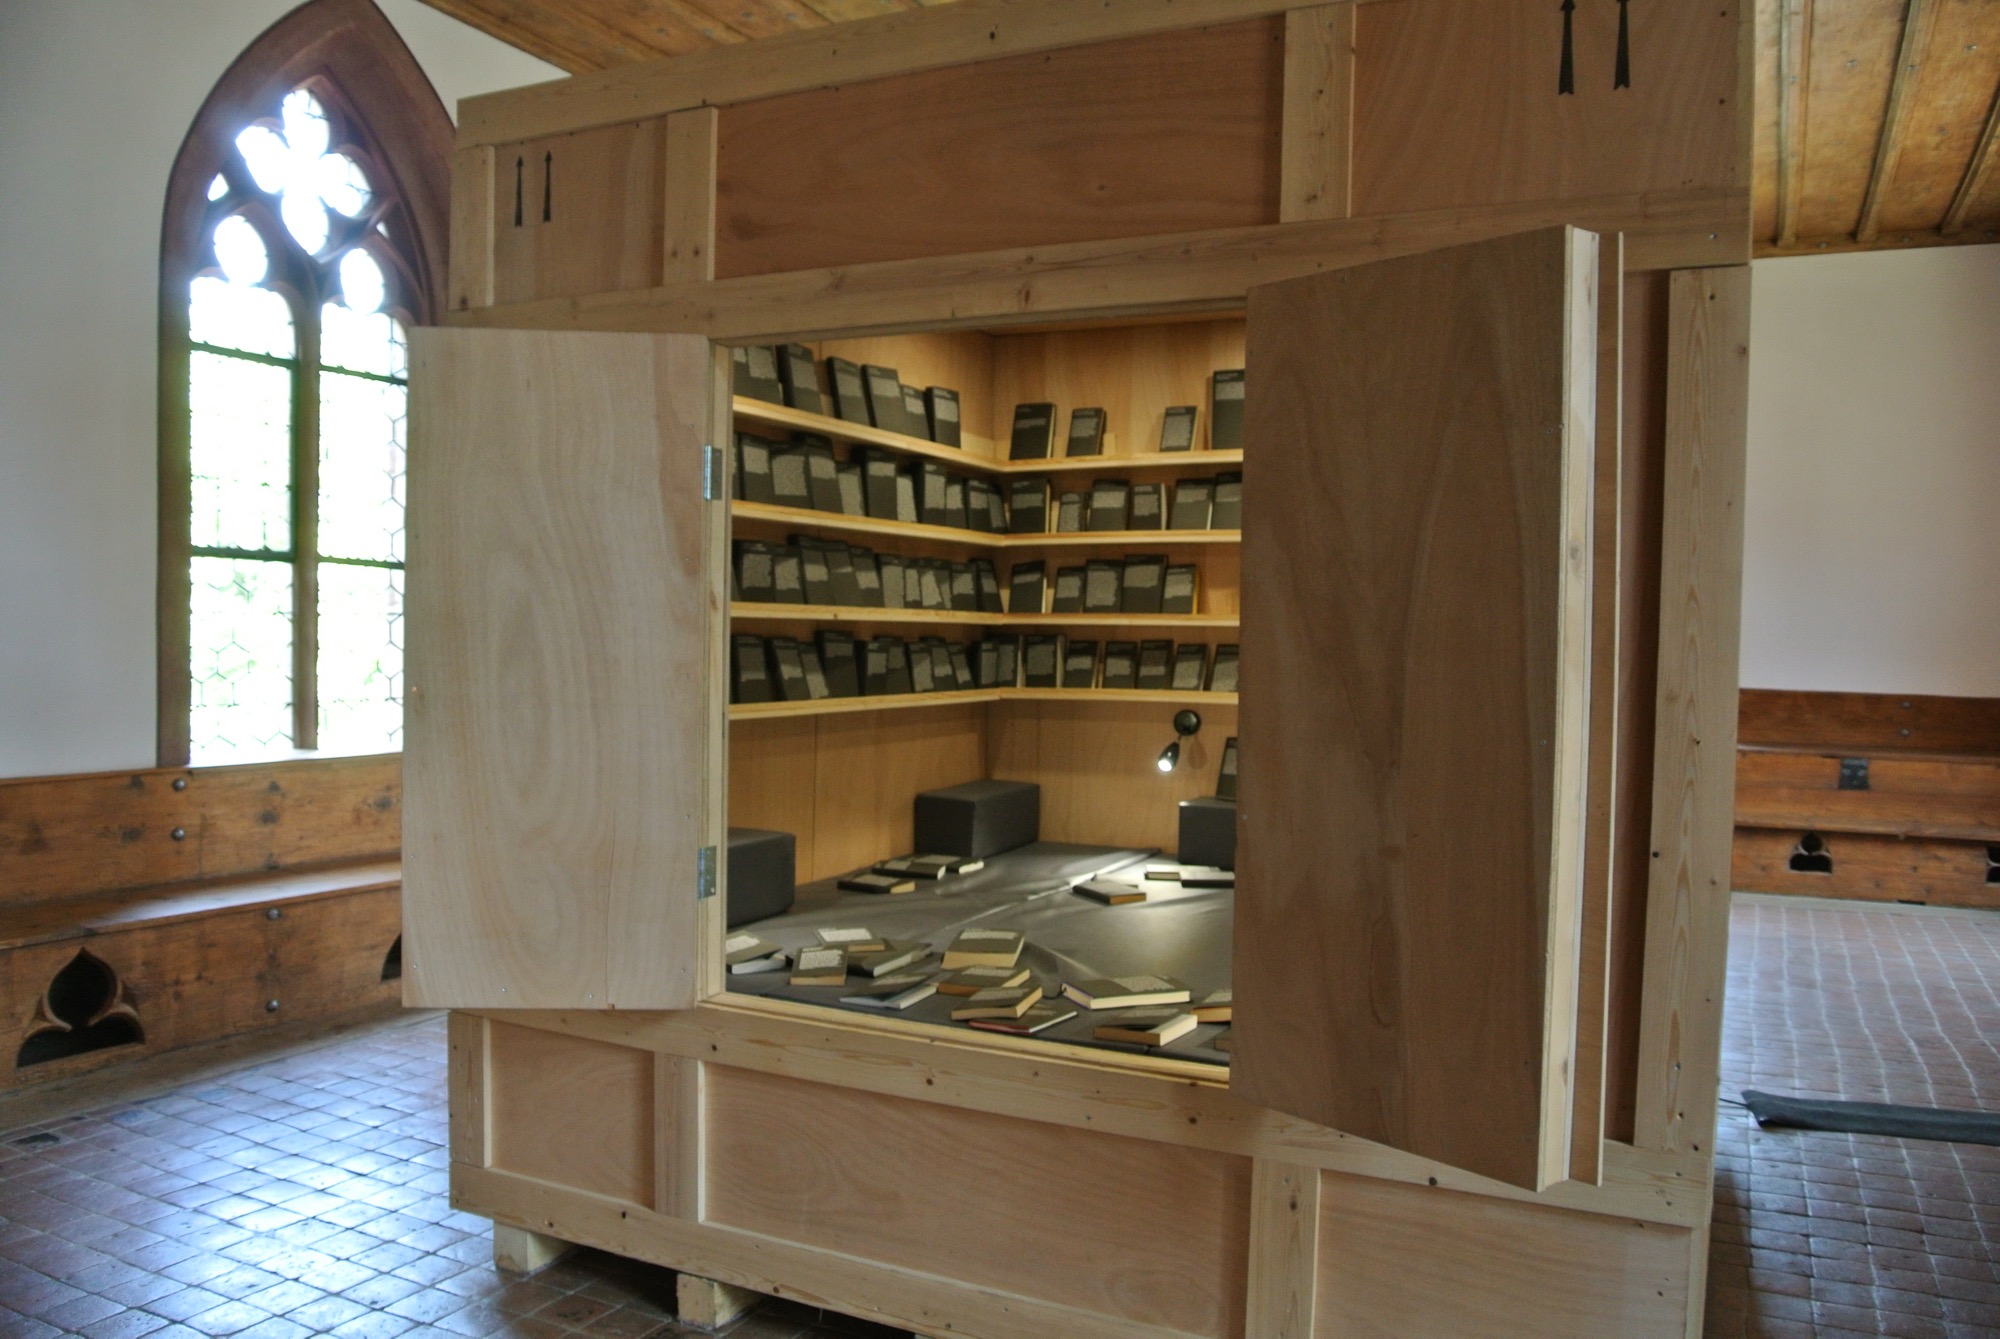 «Habitación de Libros Prohibidos» von Alicia Framis im Konzilsaal des Basler Münsters